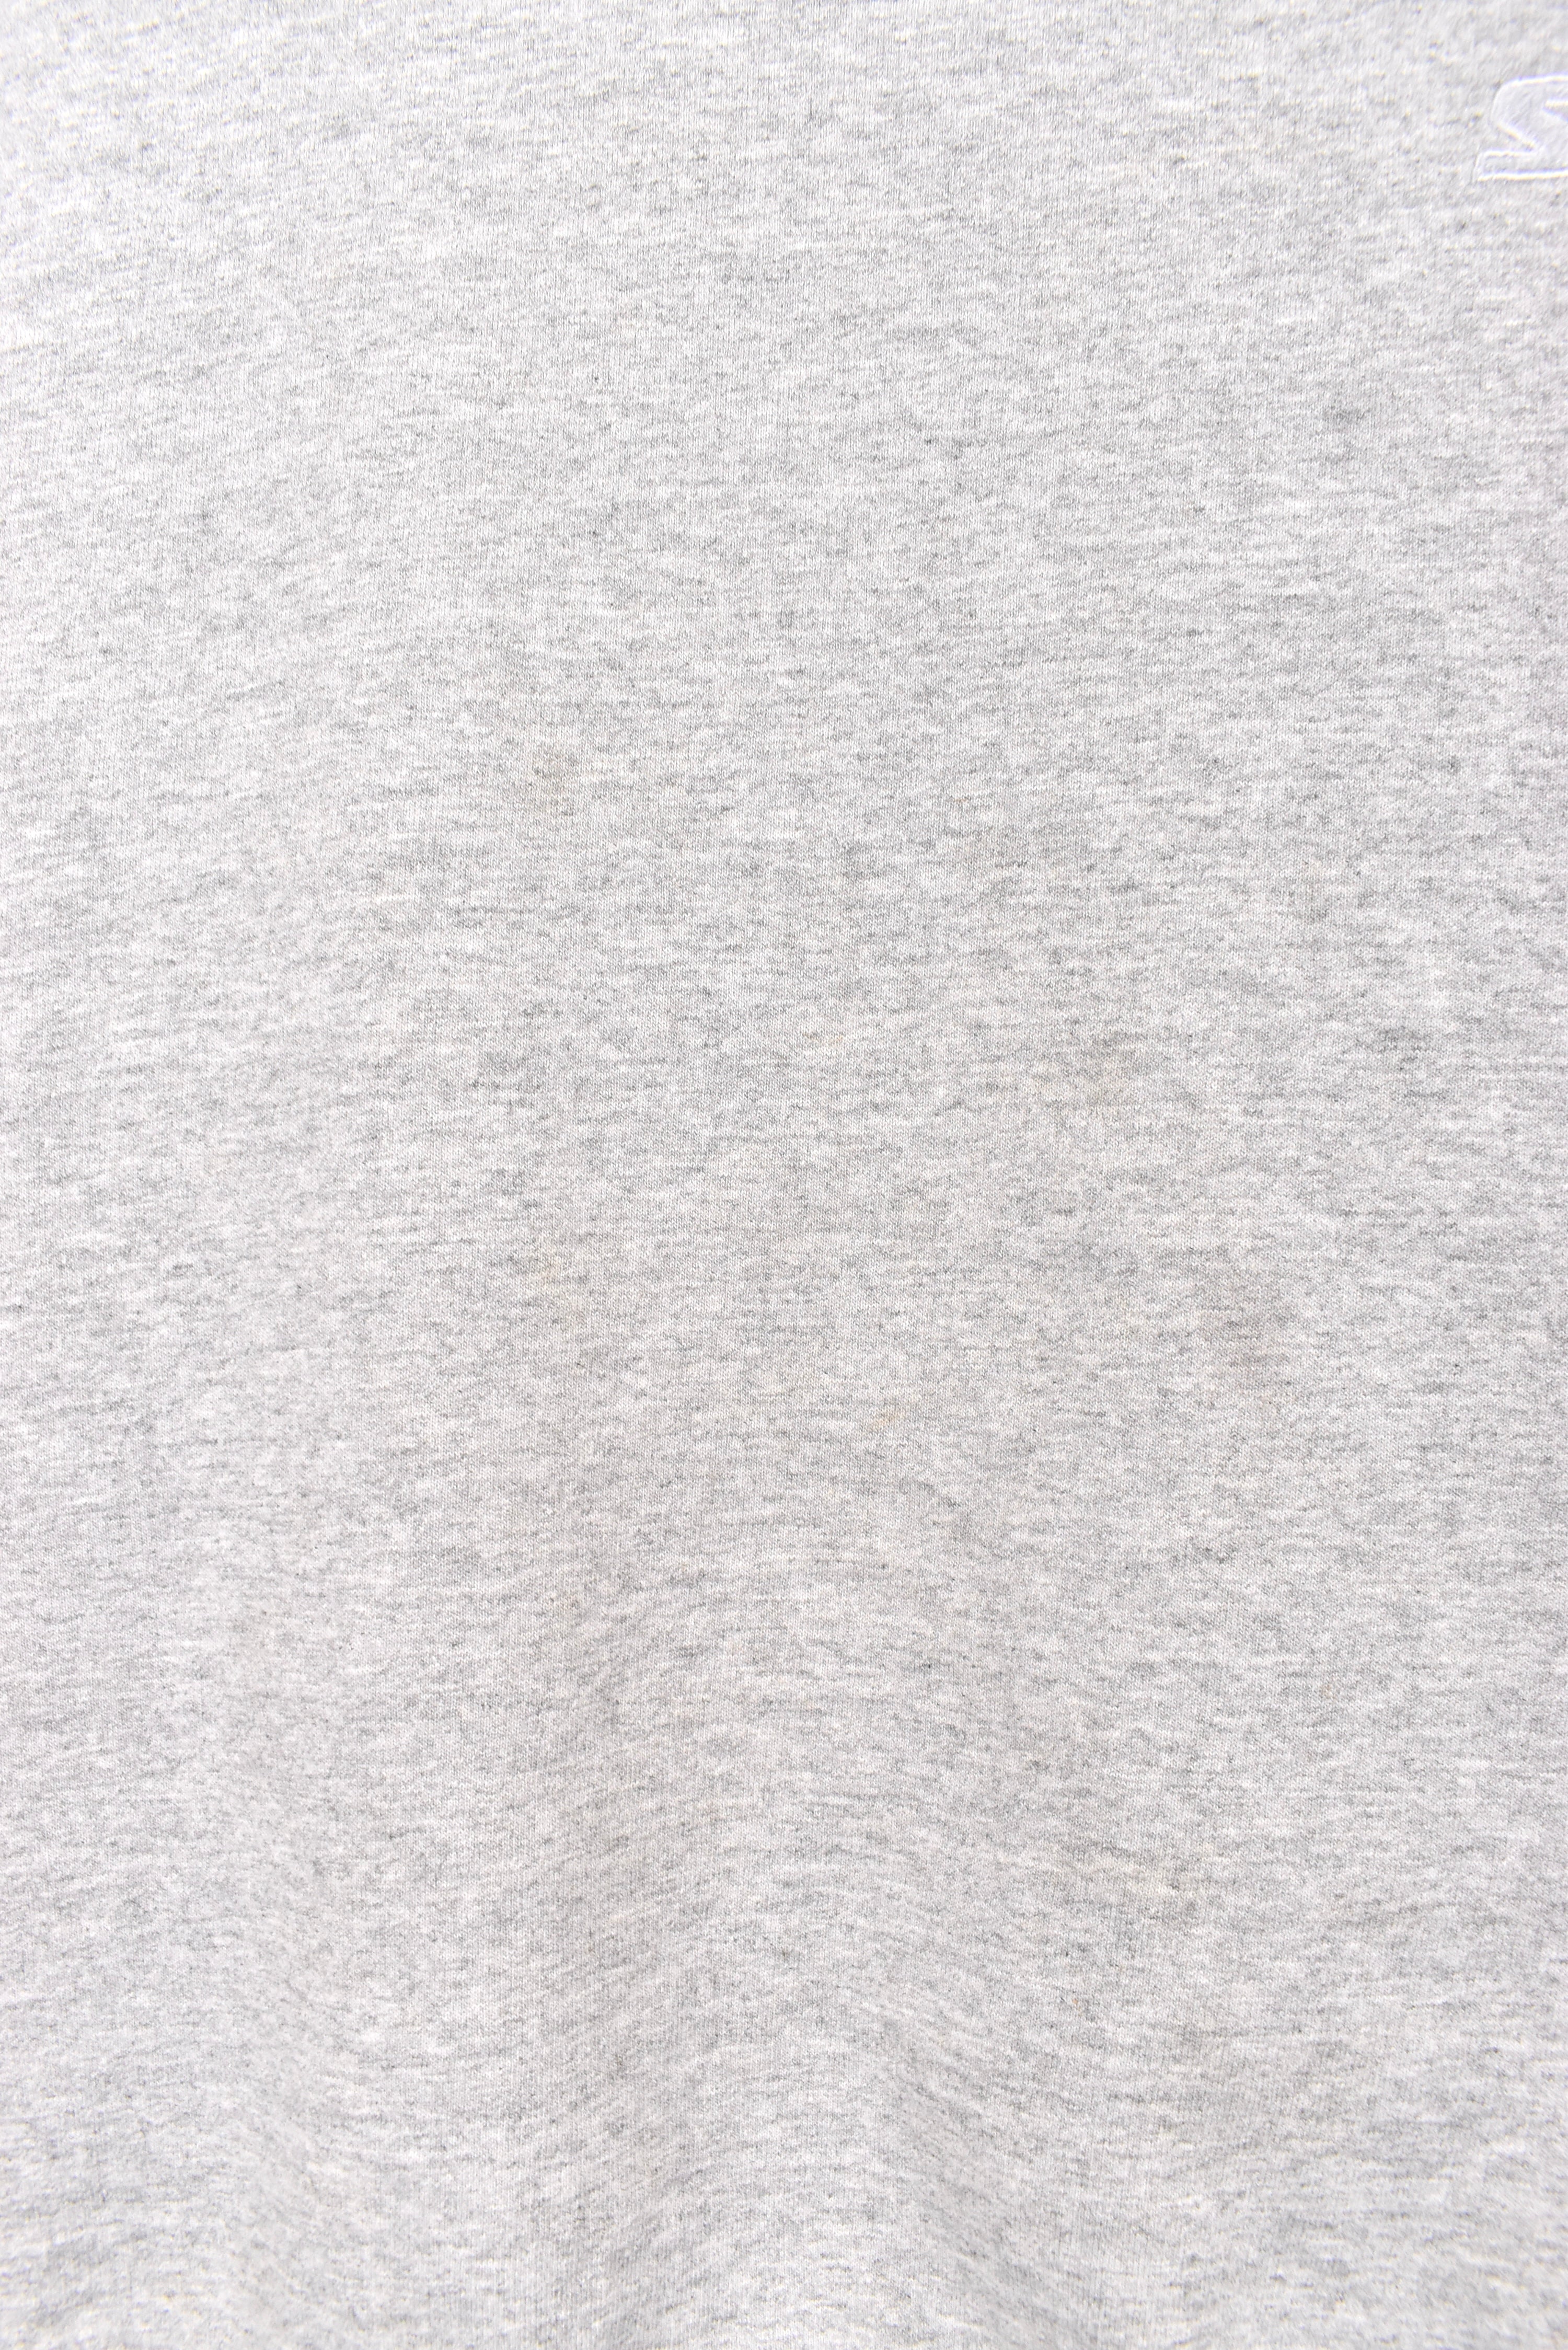 Vintage Starter sweatshirt, grey embroidered crewneck - AU XXL STARTER